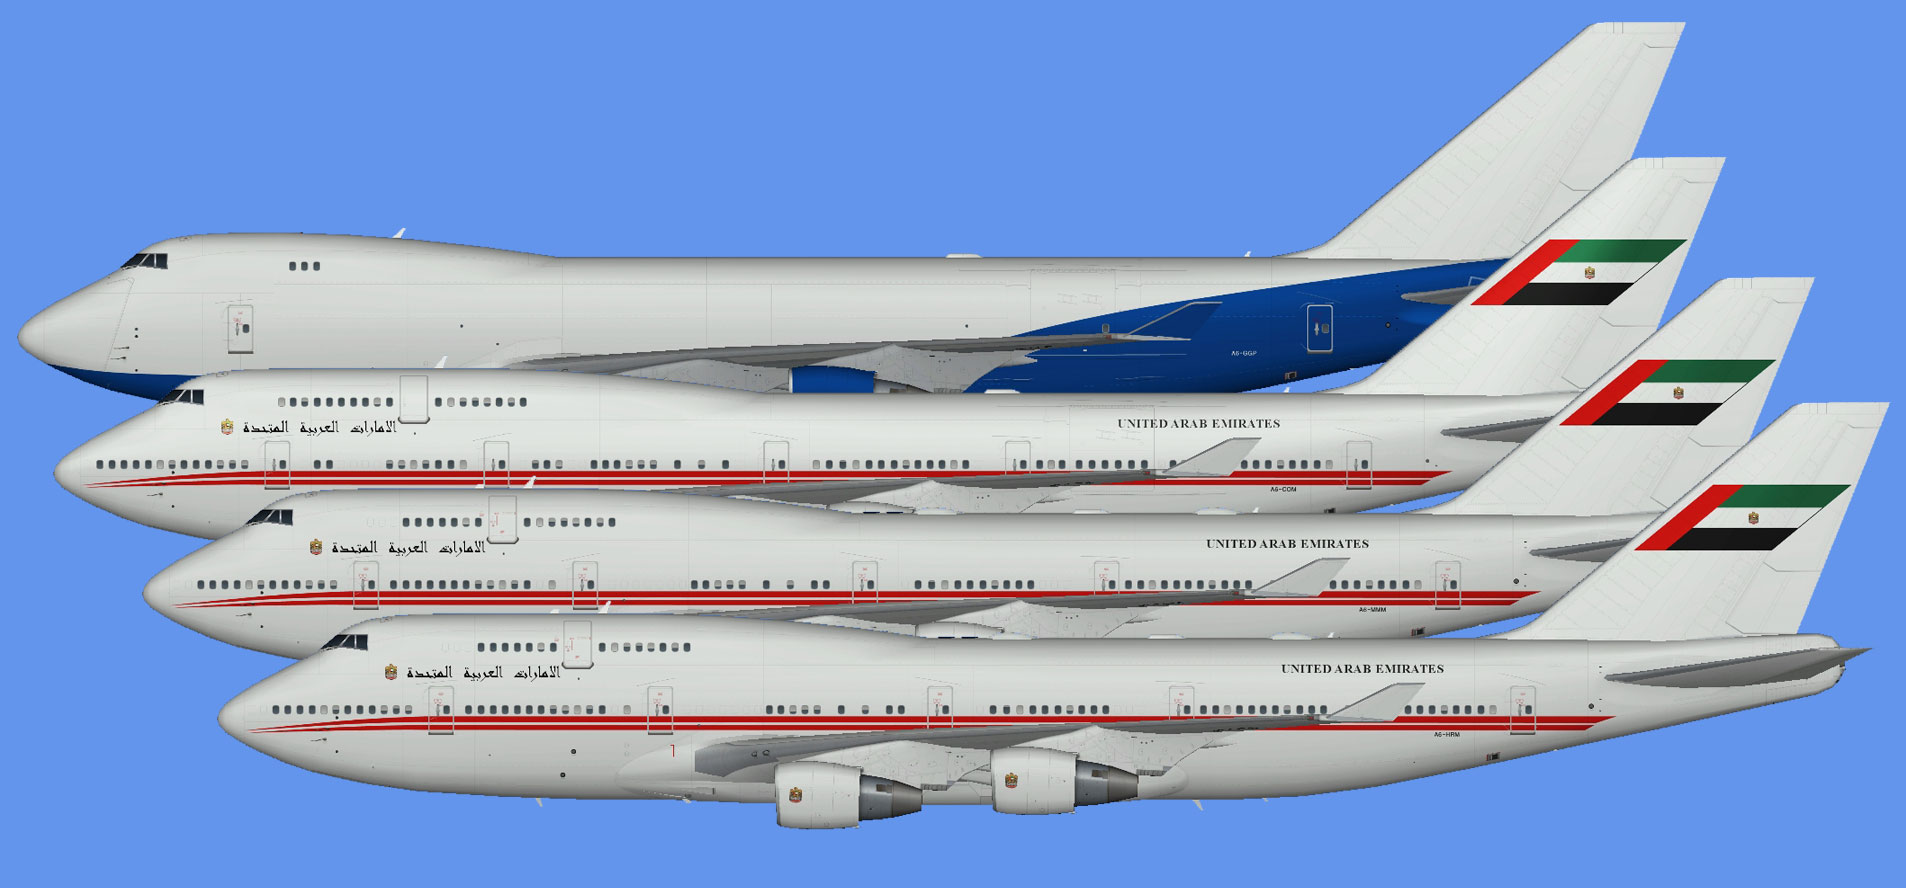 Dubai Air Wing Boeing 747-400 fleet